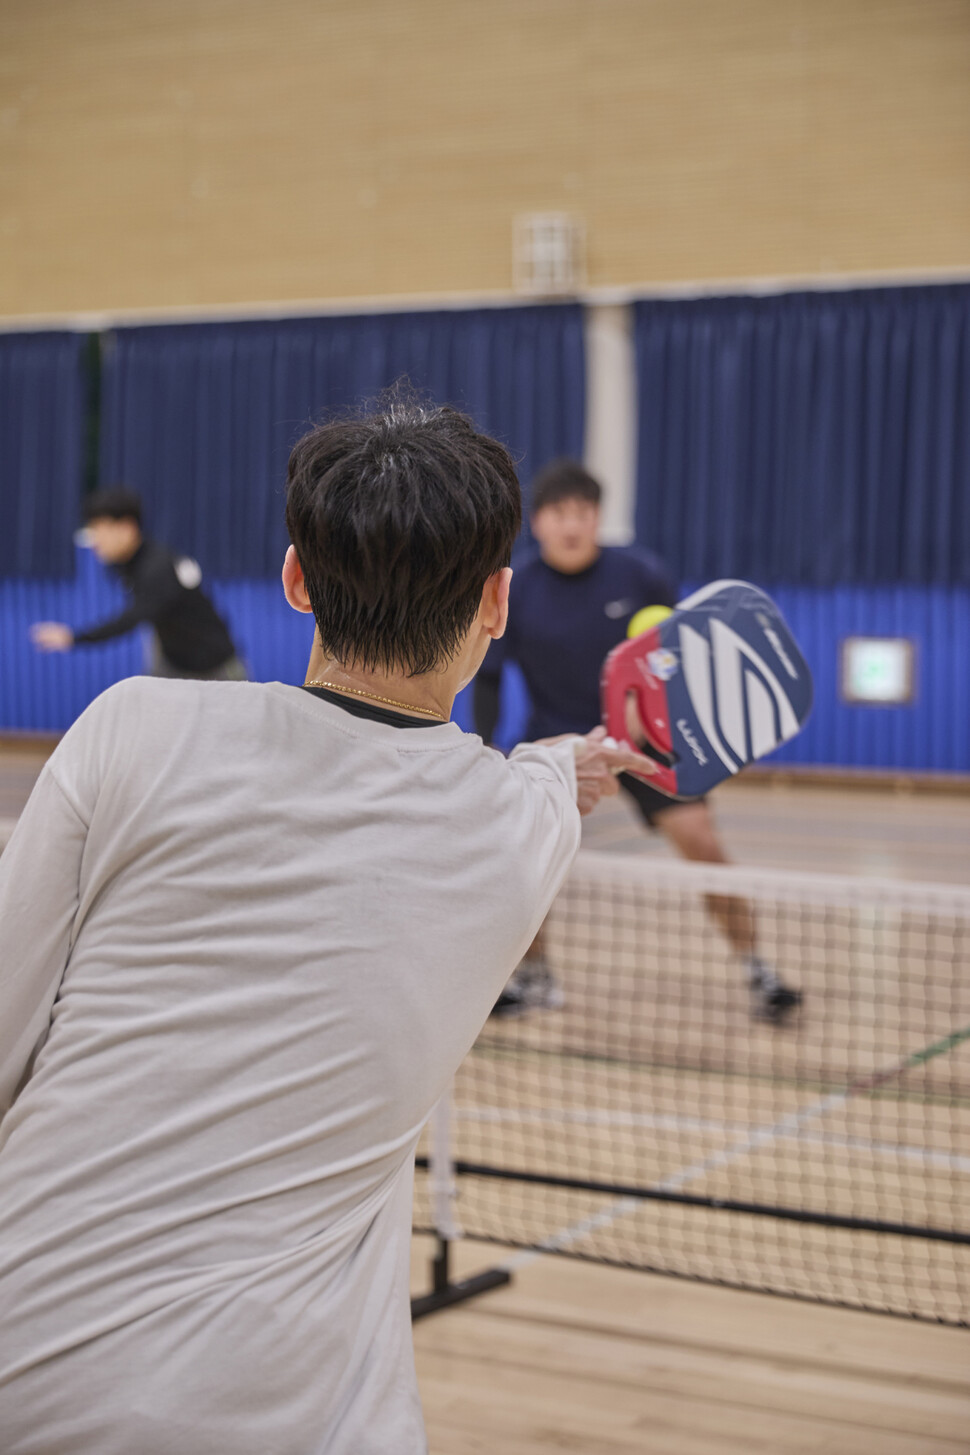 지난달 30일 서울 강서구 서진학교 체육관에서 20·30 피클볼 클럽 ‘투덜새’의 한 회원이 포핸드로 볼을 받아치고 있다. 스튜디오 어댑터 염서정